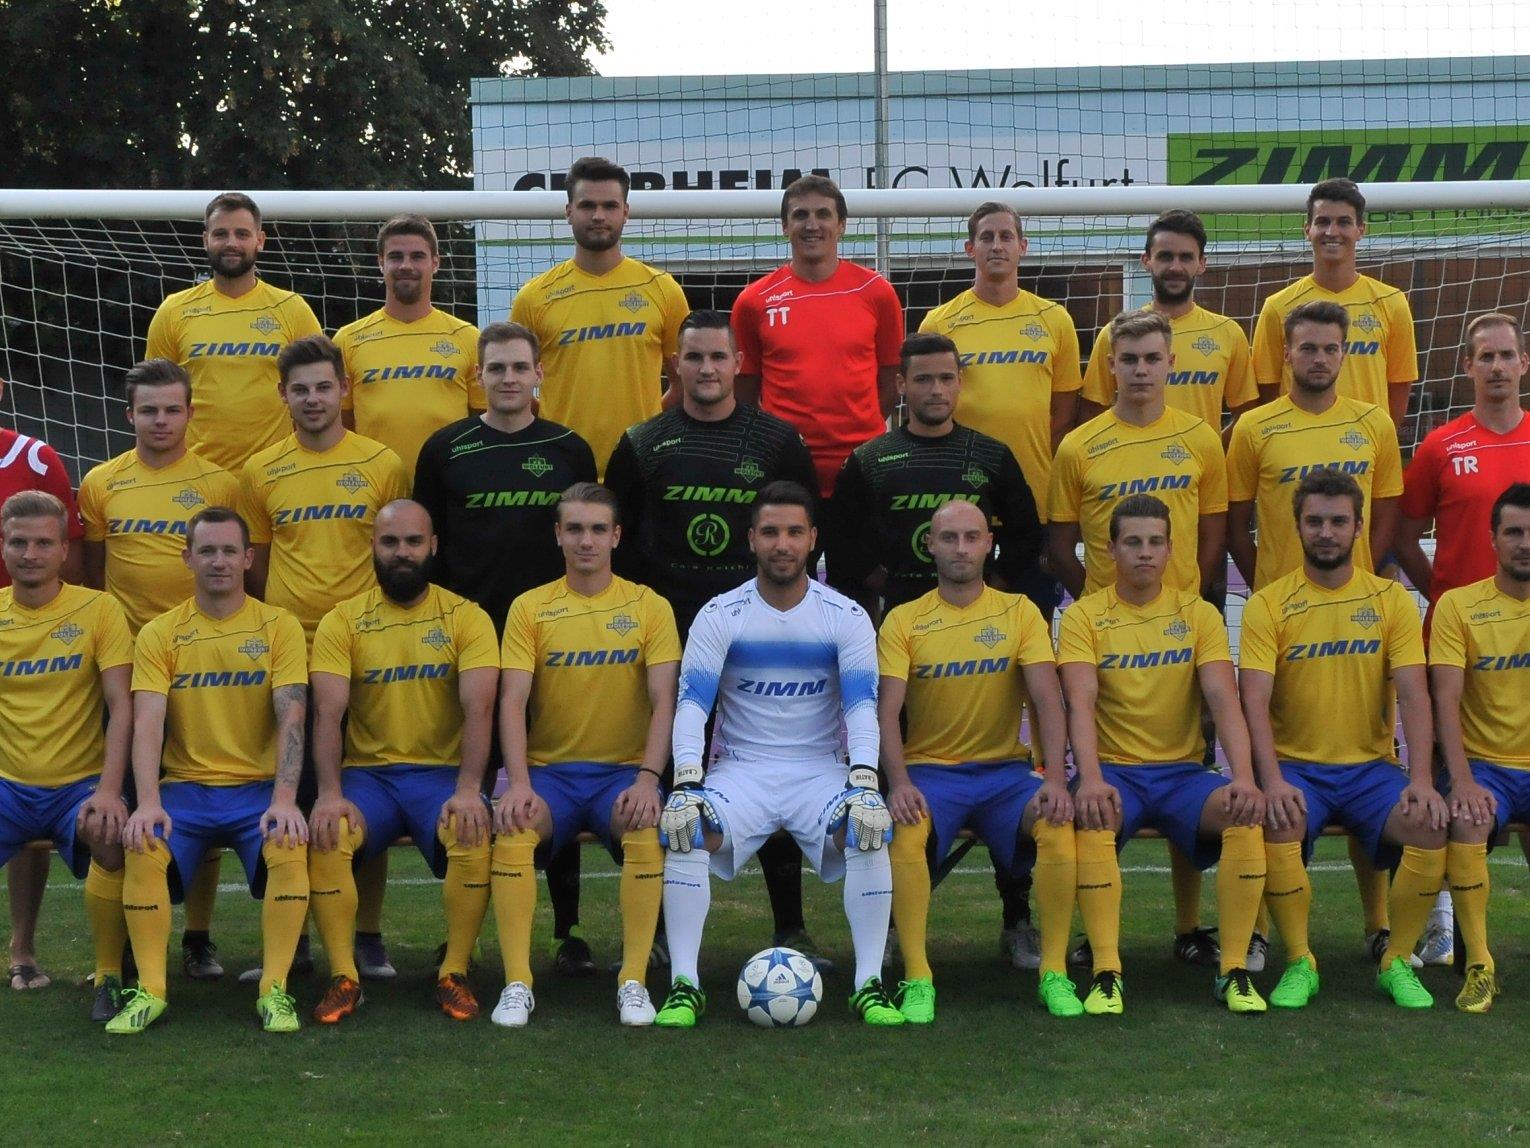 Der ZIMM FC Wolfurt will sich am Sonntag für die Cup-Niederlage revanchieren!